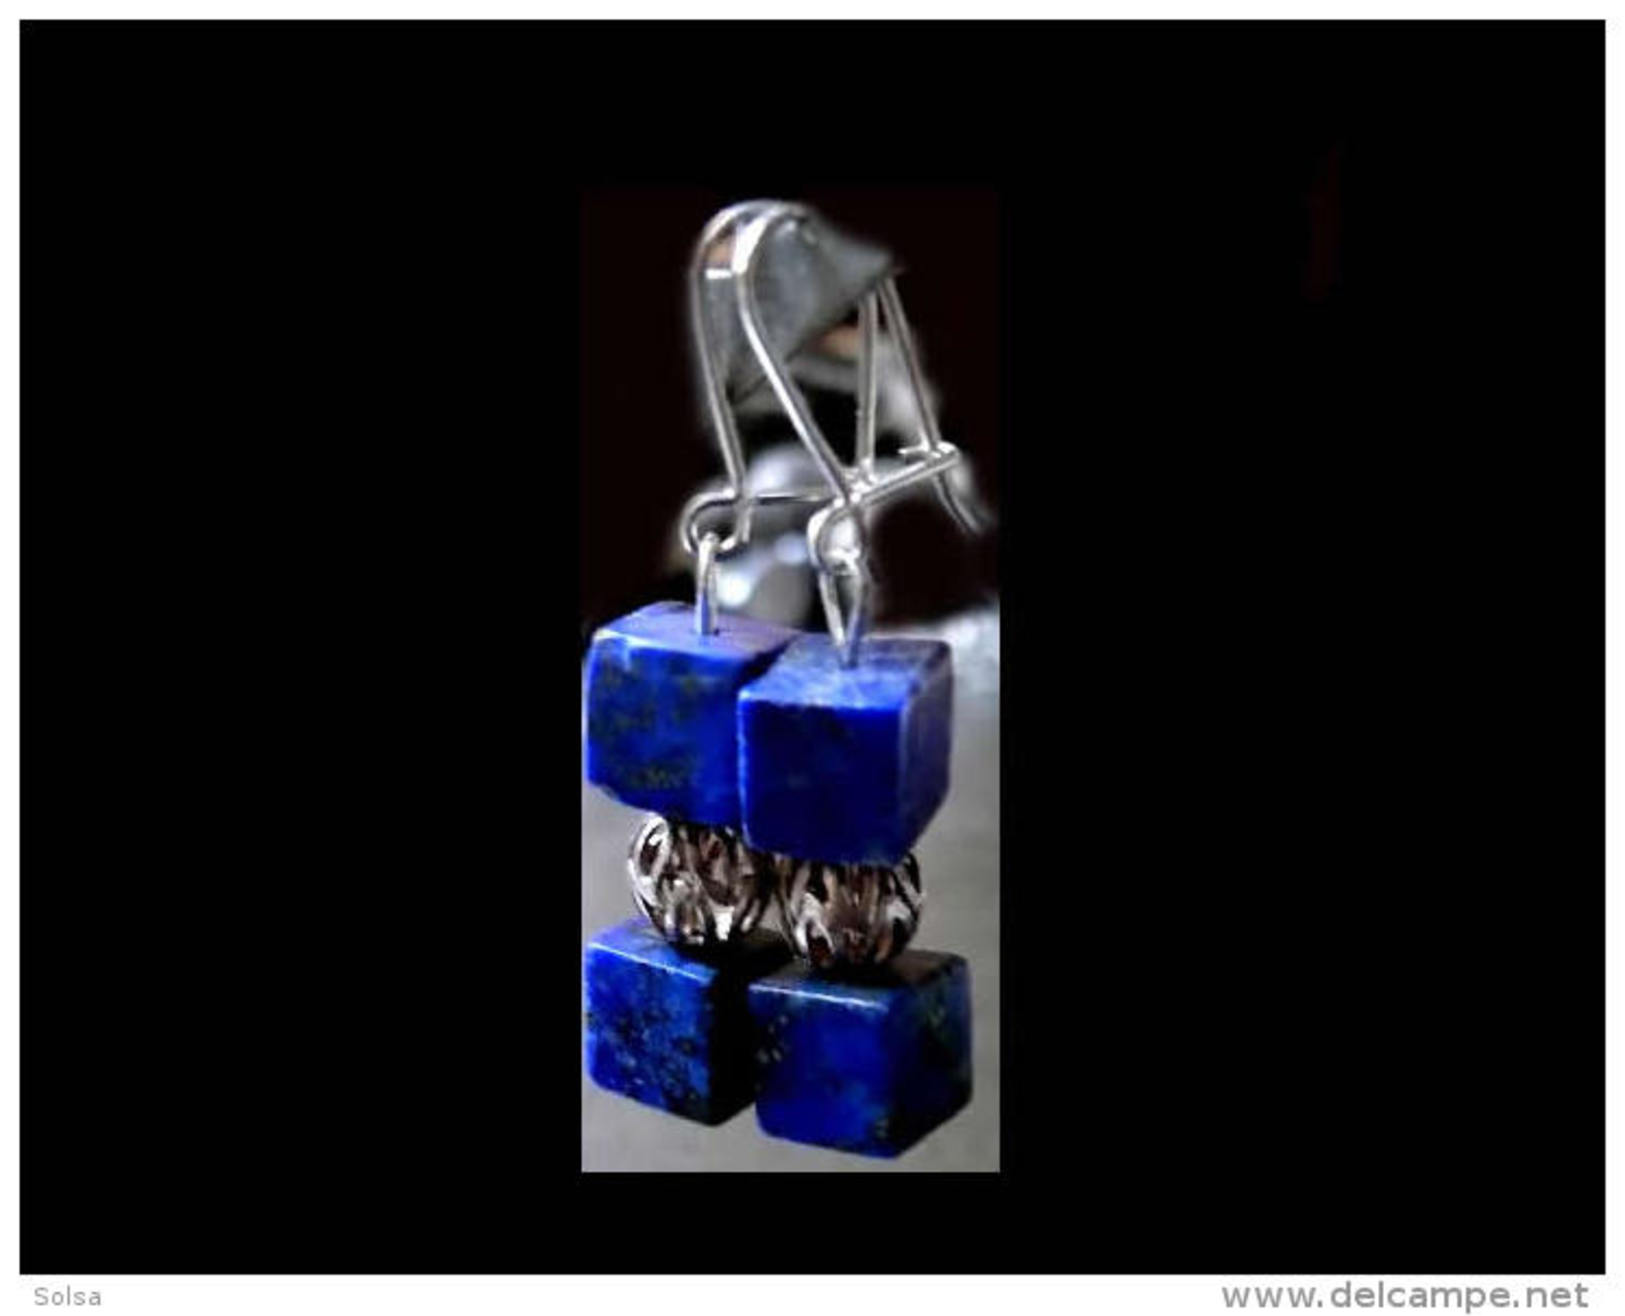 Superbes Boucles D'oreille Géométriqueqlapis Afghan / Afghani Lapis Lazuli And Iranian Gold Platted Silver Bead Earrings - Orecchini